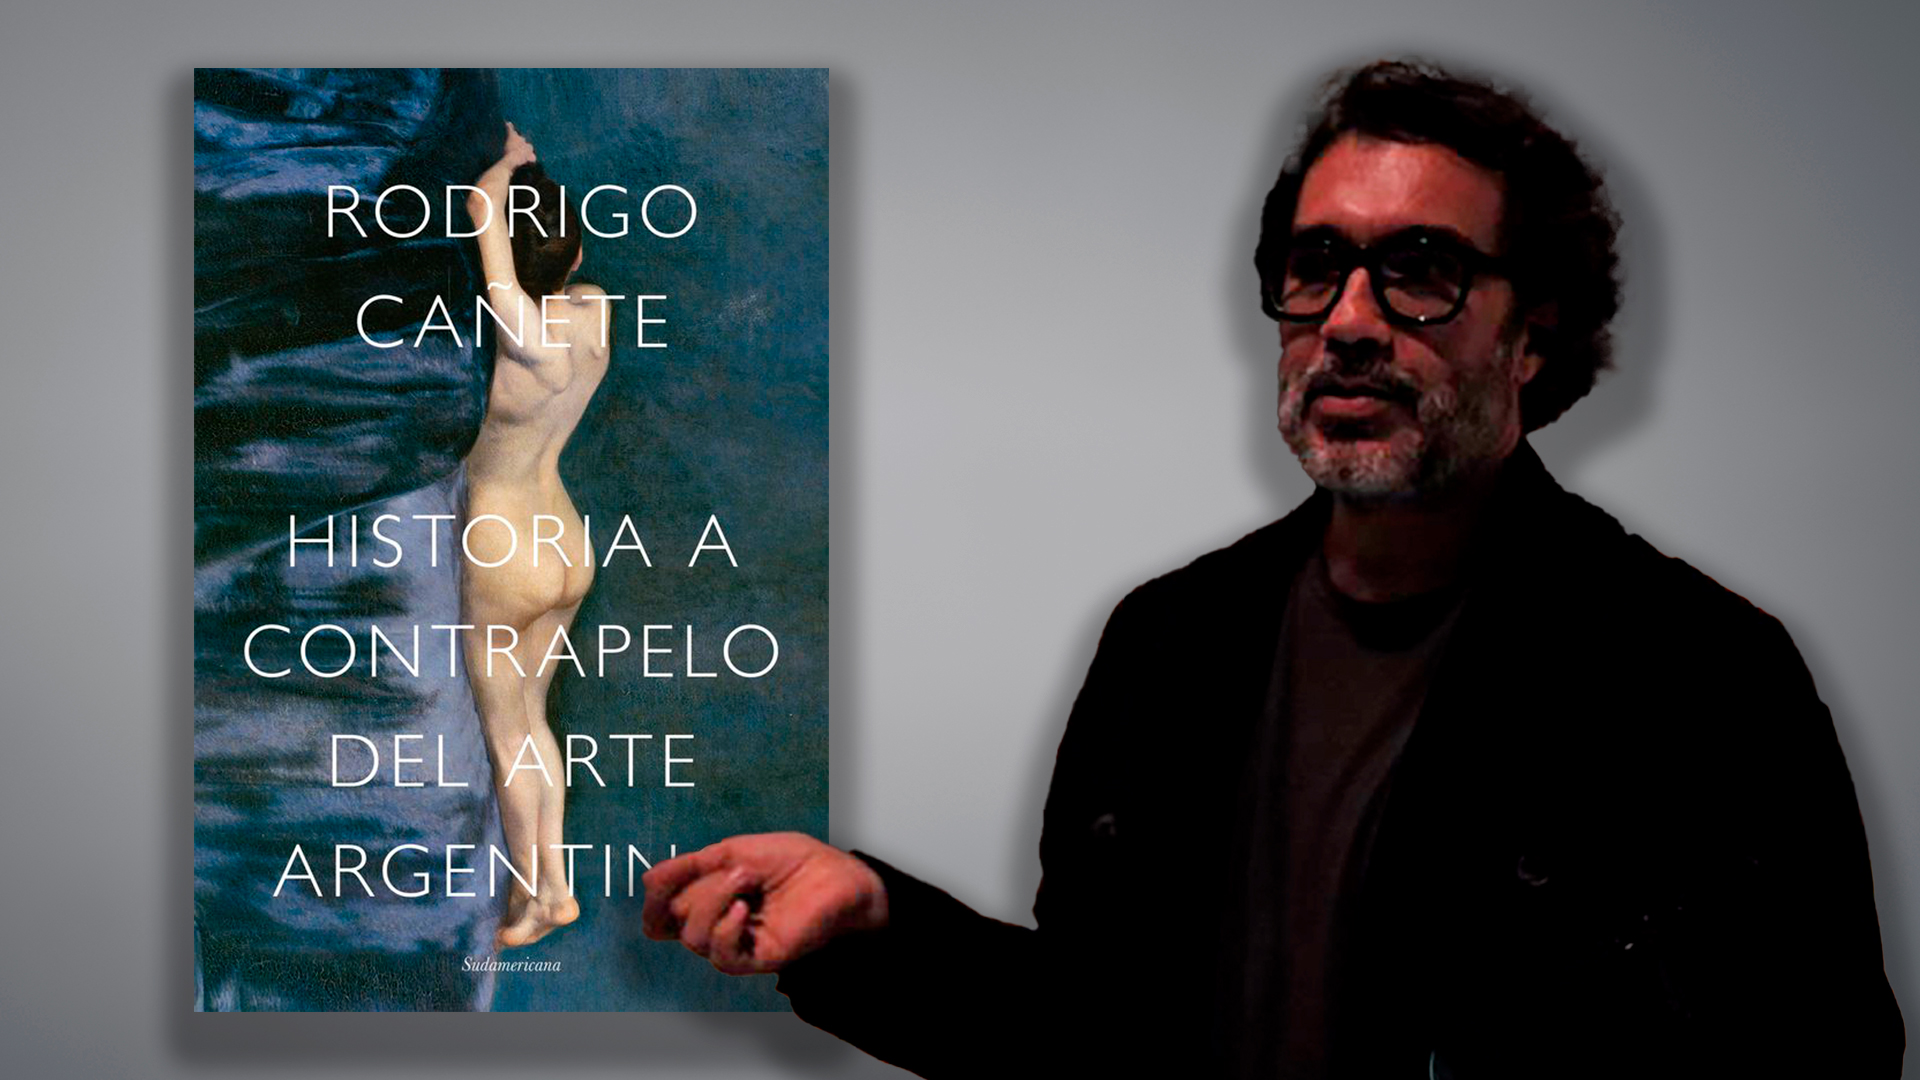 Cañete acaba de publicar su "Historia a contrapelo del arte argentino" y ya hay polémica.